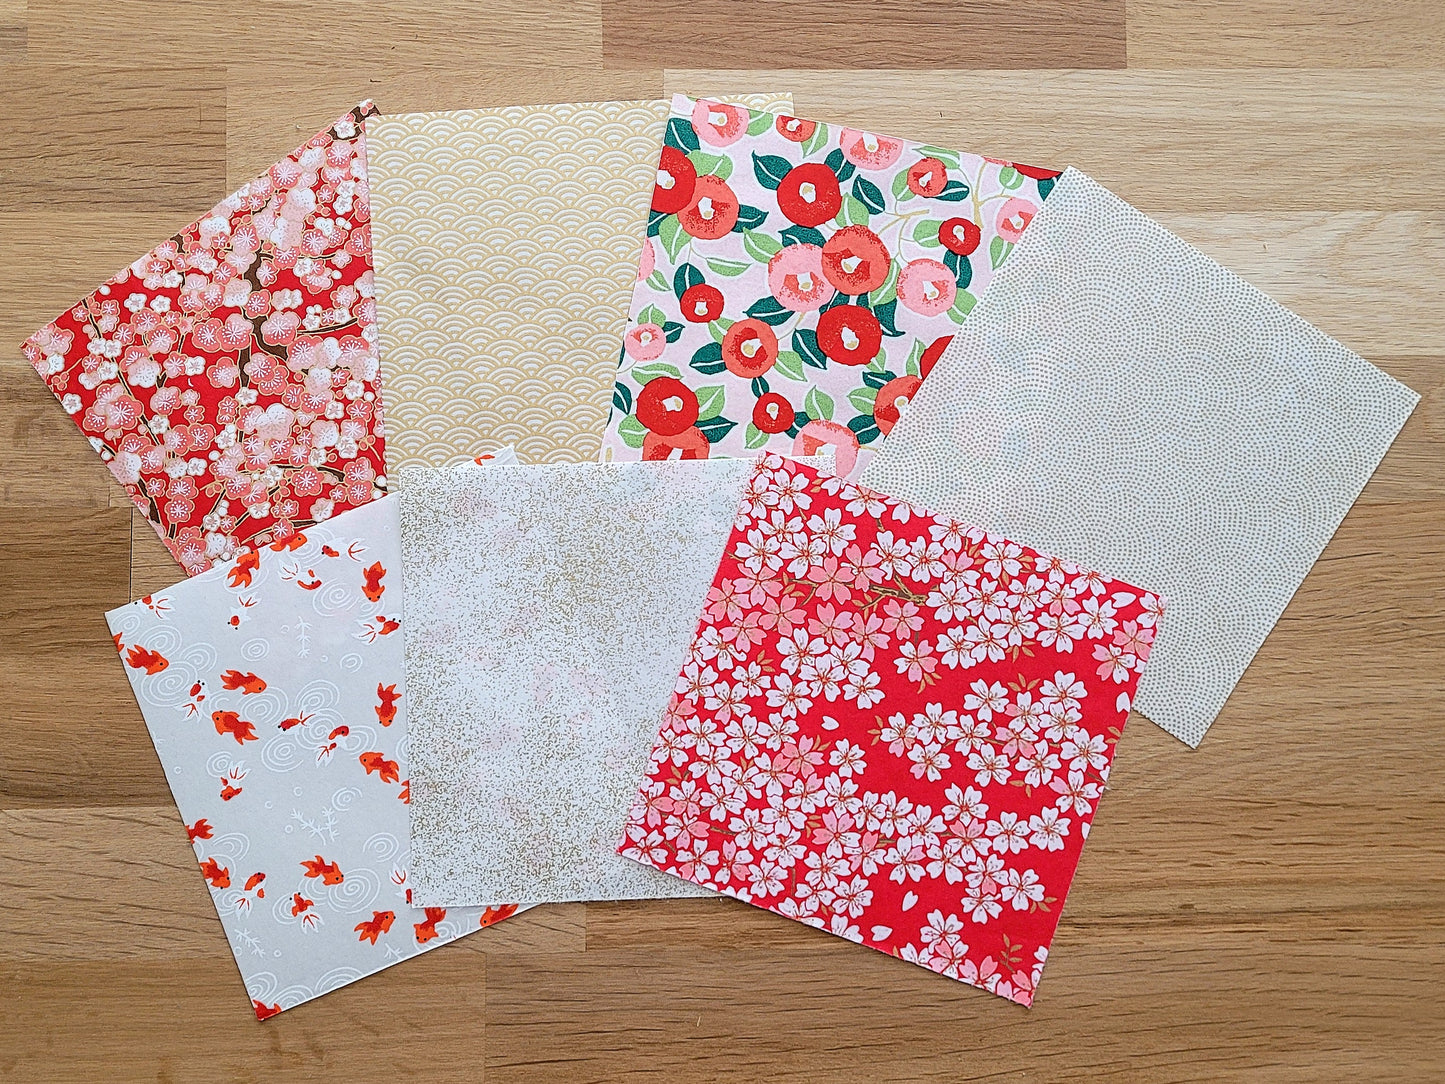 Kit de 7 papiers origami japonais - "Coquelicot" - Rouge, blanc, doré